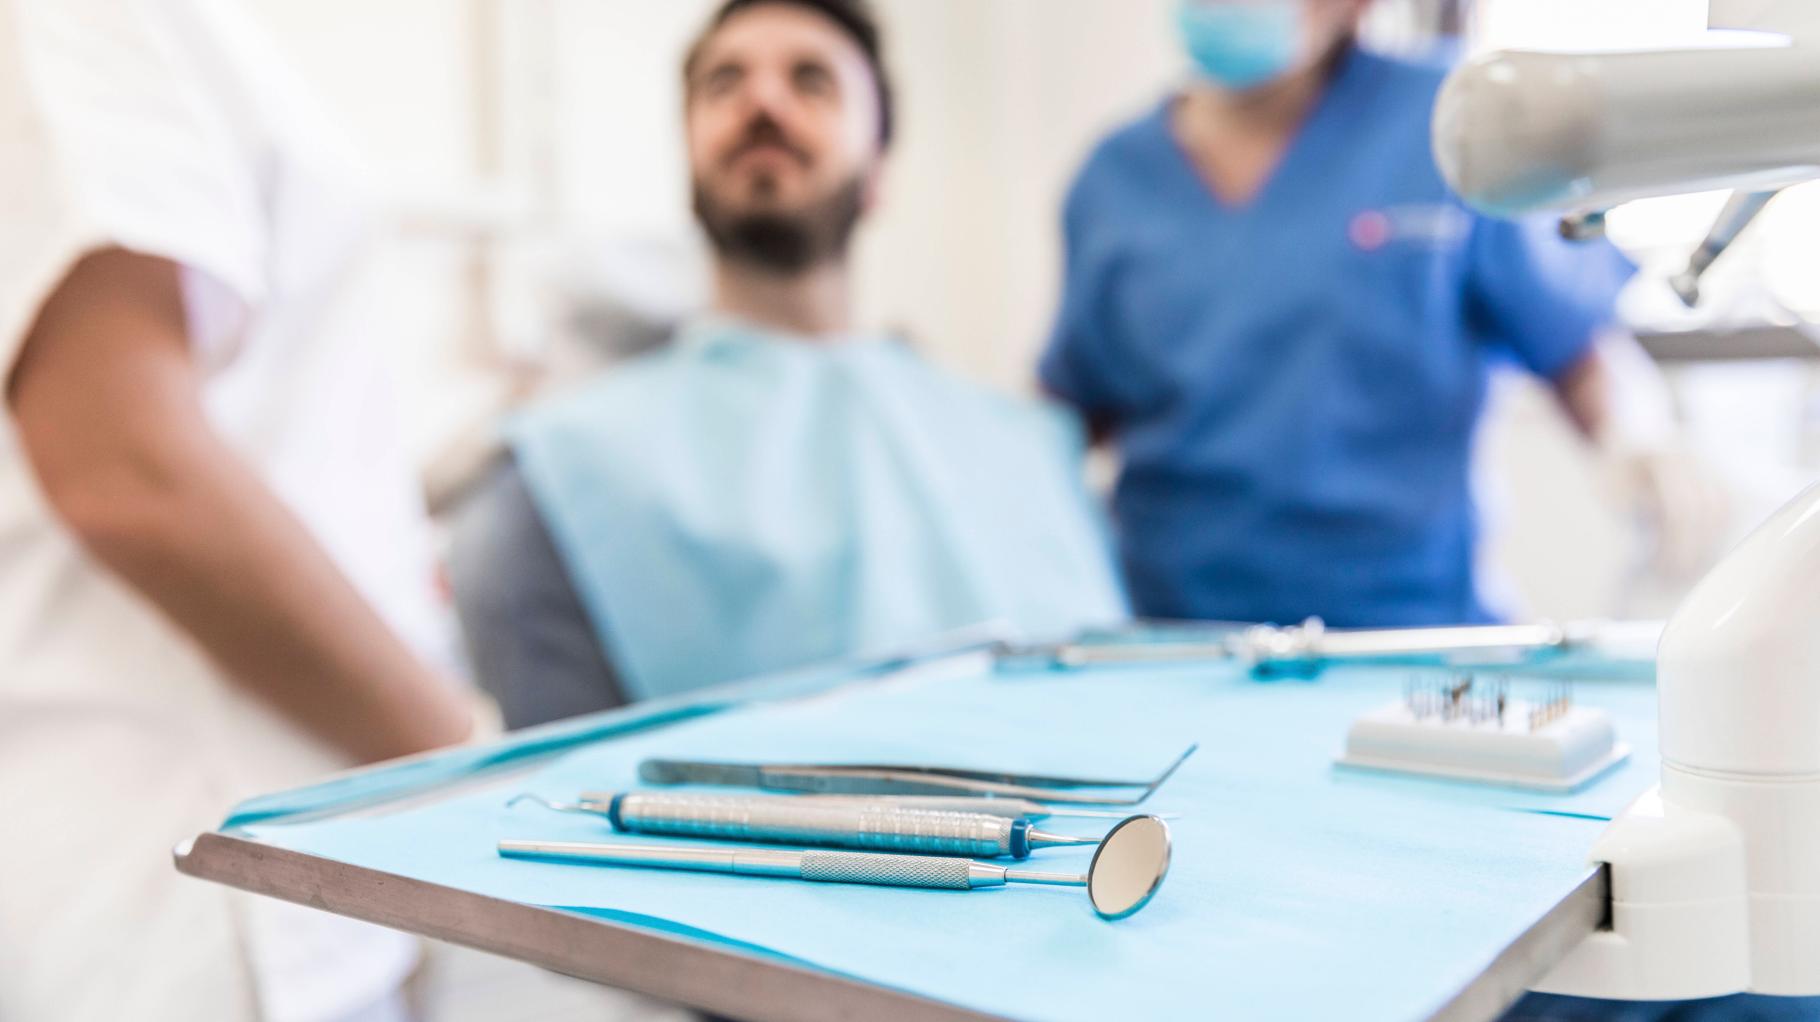 Gesundheitsamt bemängelt Hygiene in Zahnarztpraxen in MV